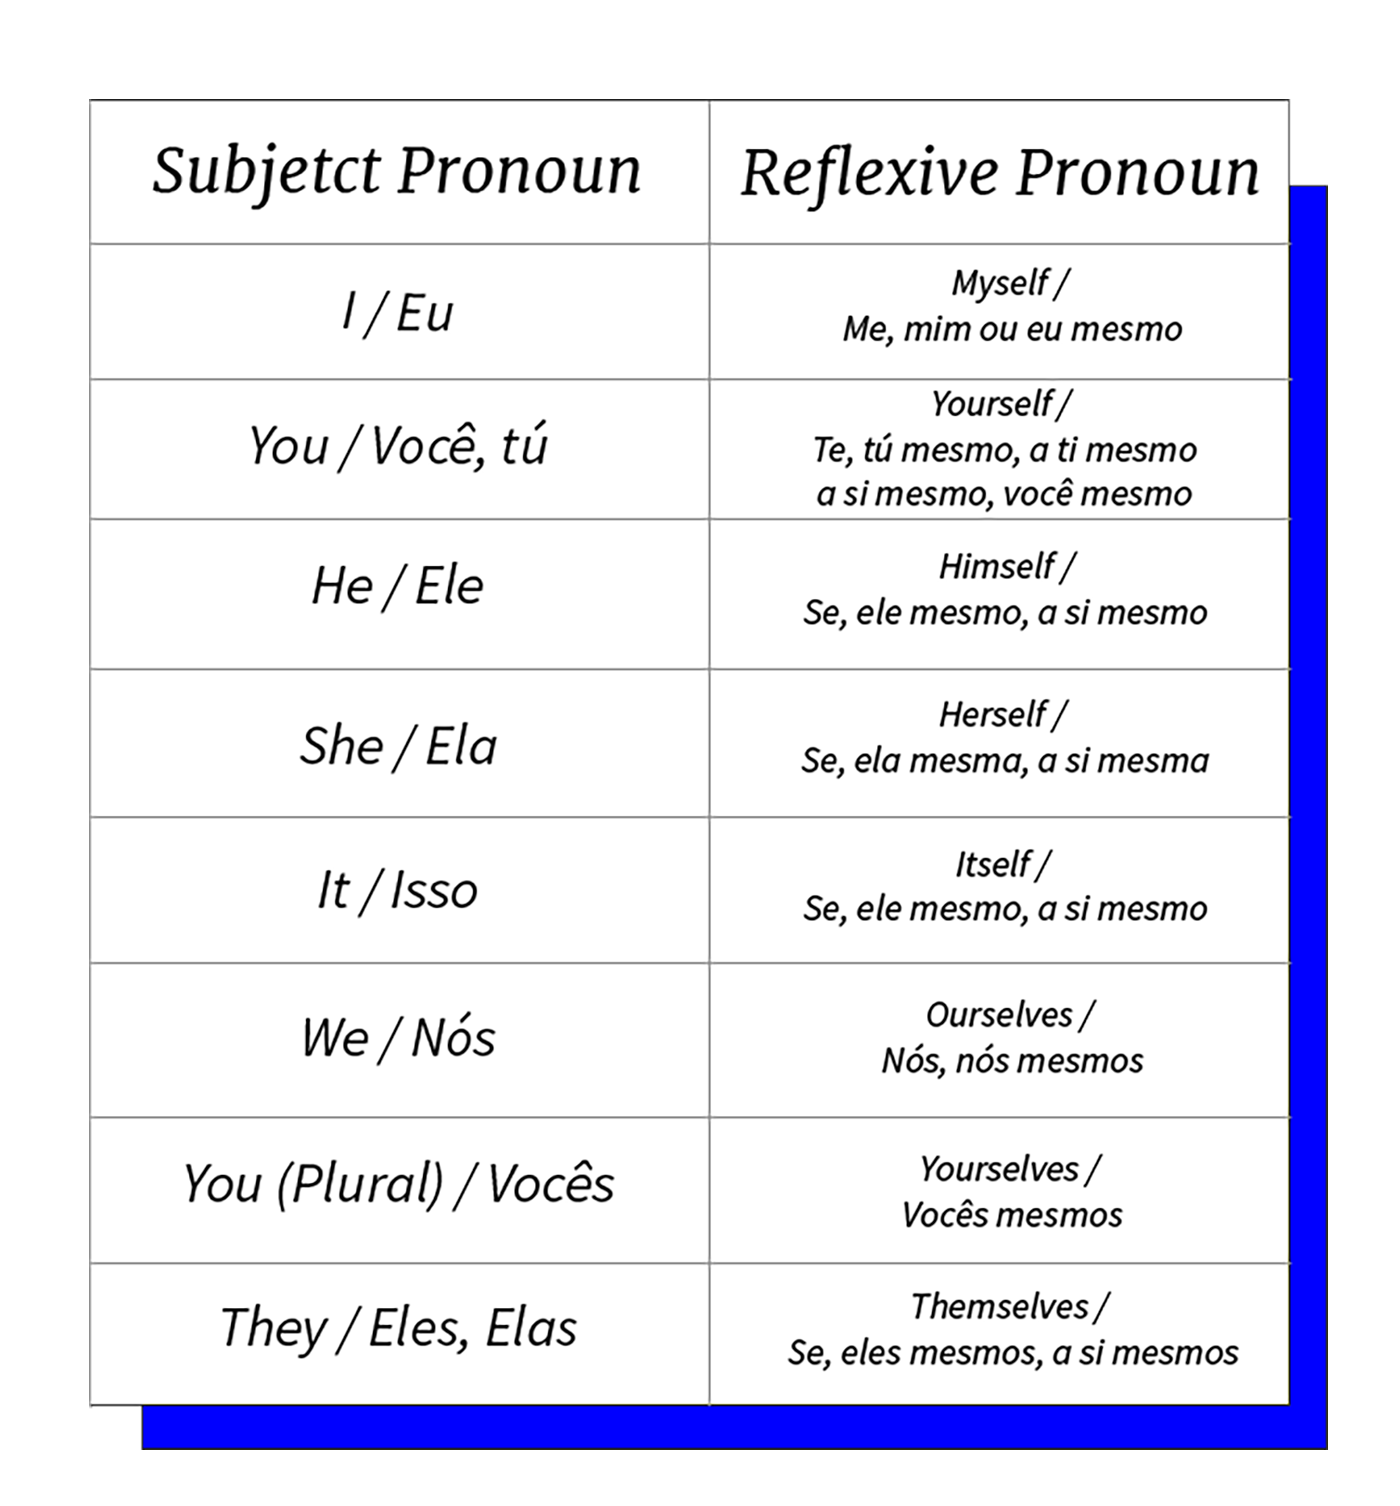 Tabela do pronomes reflexivos em inglês.